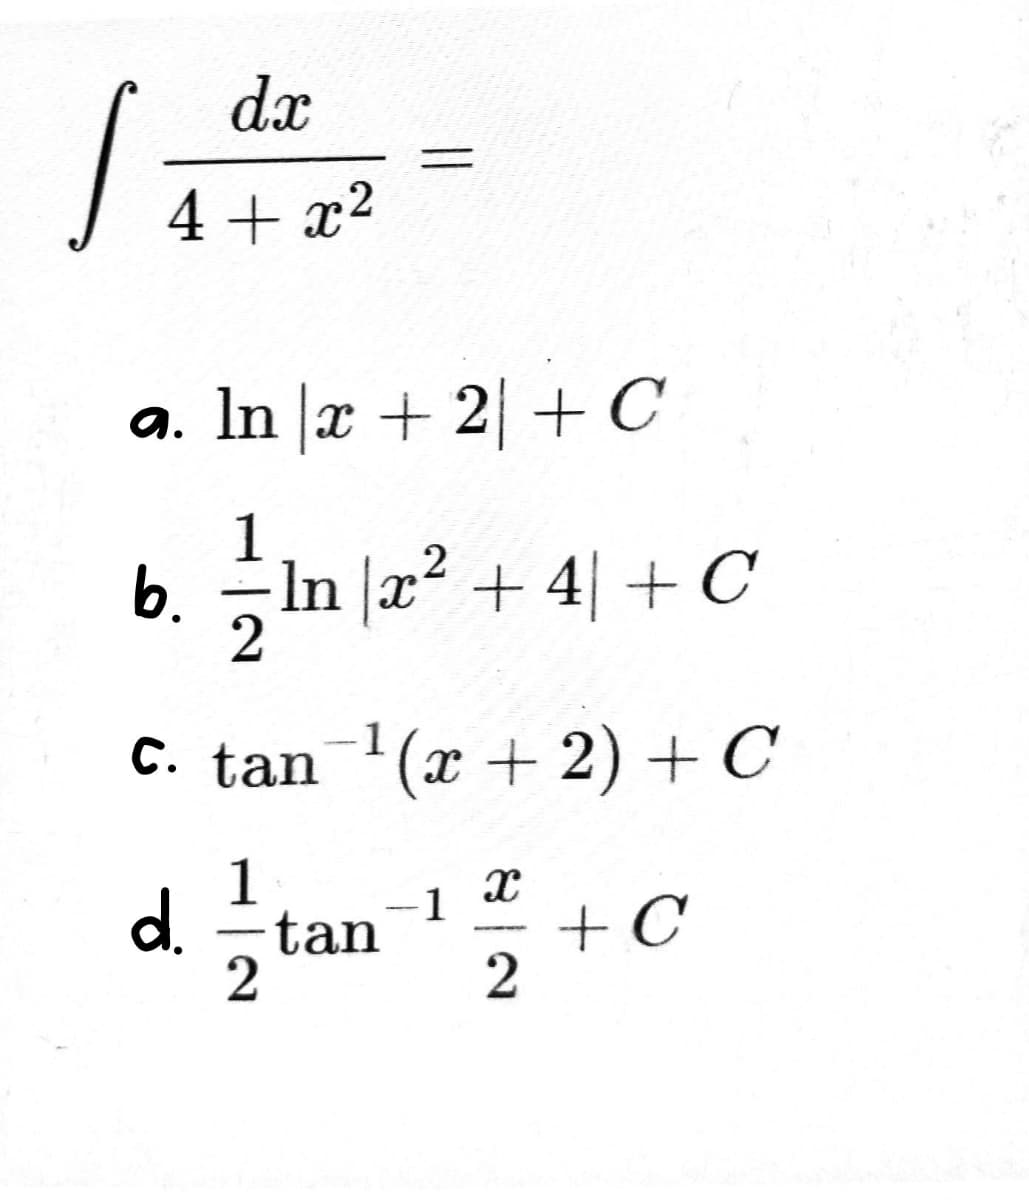 S
dx
4+x²
a. In x + 2 + C
2
1
b. = ln x² + 4 + C
2
-1
c. tan ¹(x + 2) + C
d.
1
2
tan -1
x
2
+ C